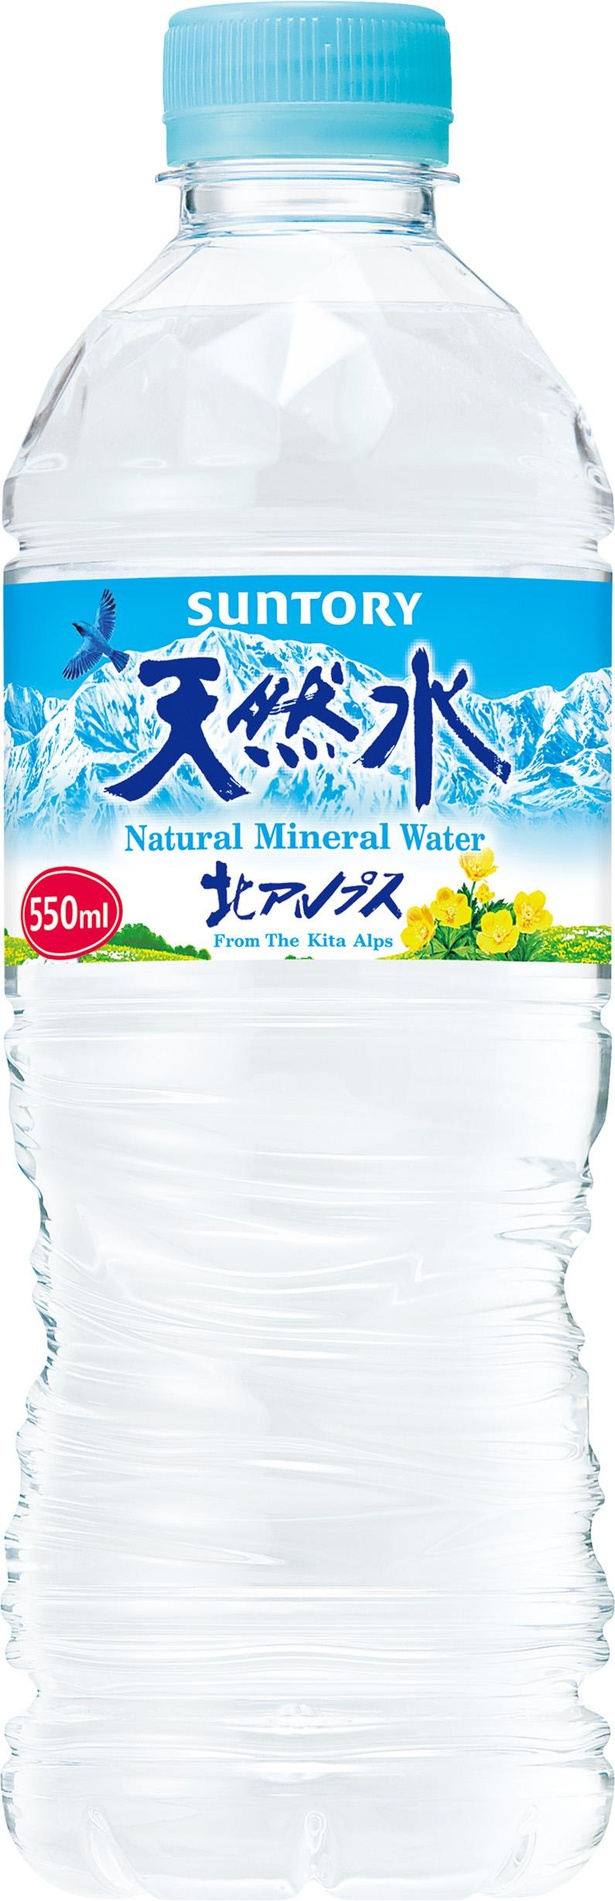 北アルプスの山々に磨かれたサントリー天然水は適度なミネラル分を含み、すっきりとした飲みくち。硬度は10mg/lと、他の3種よりも低い